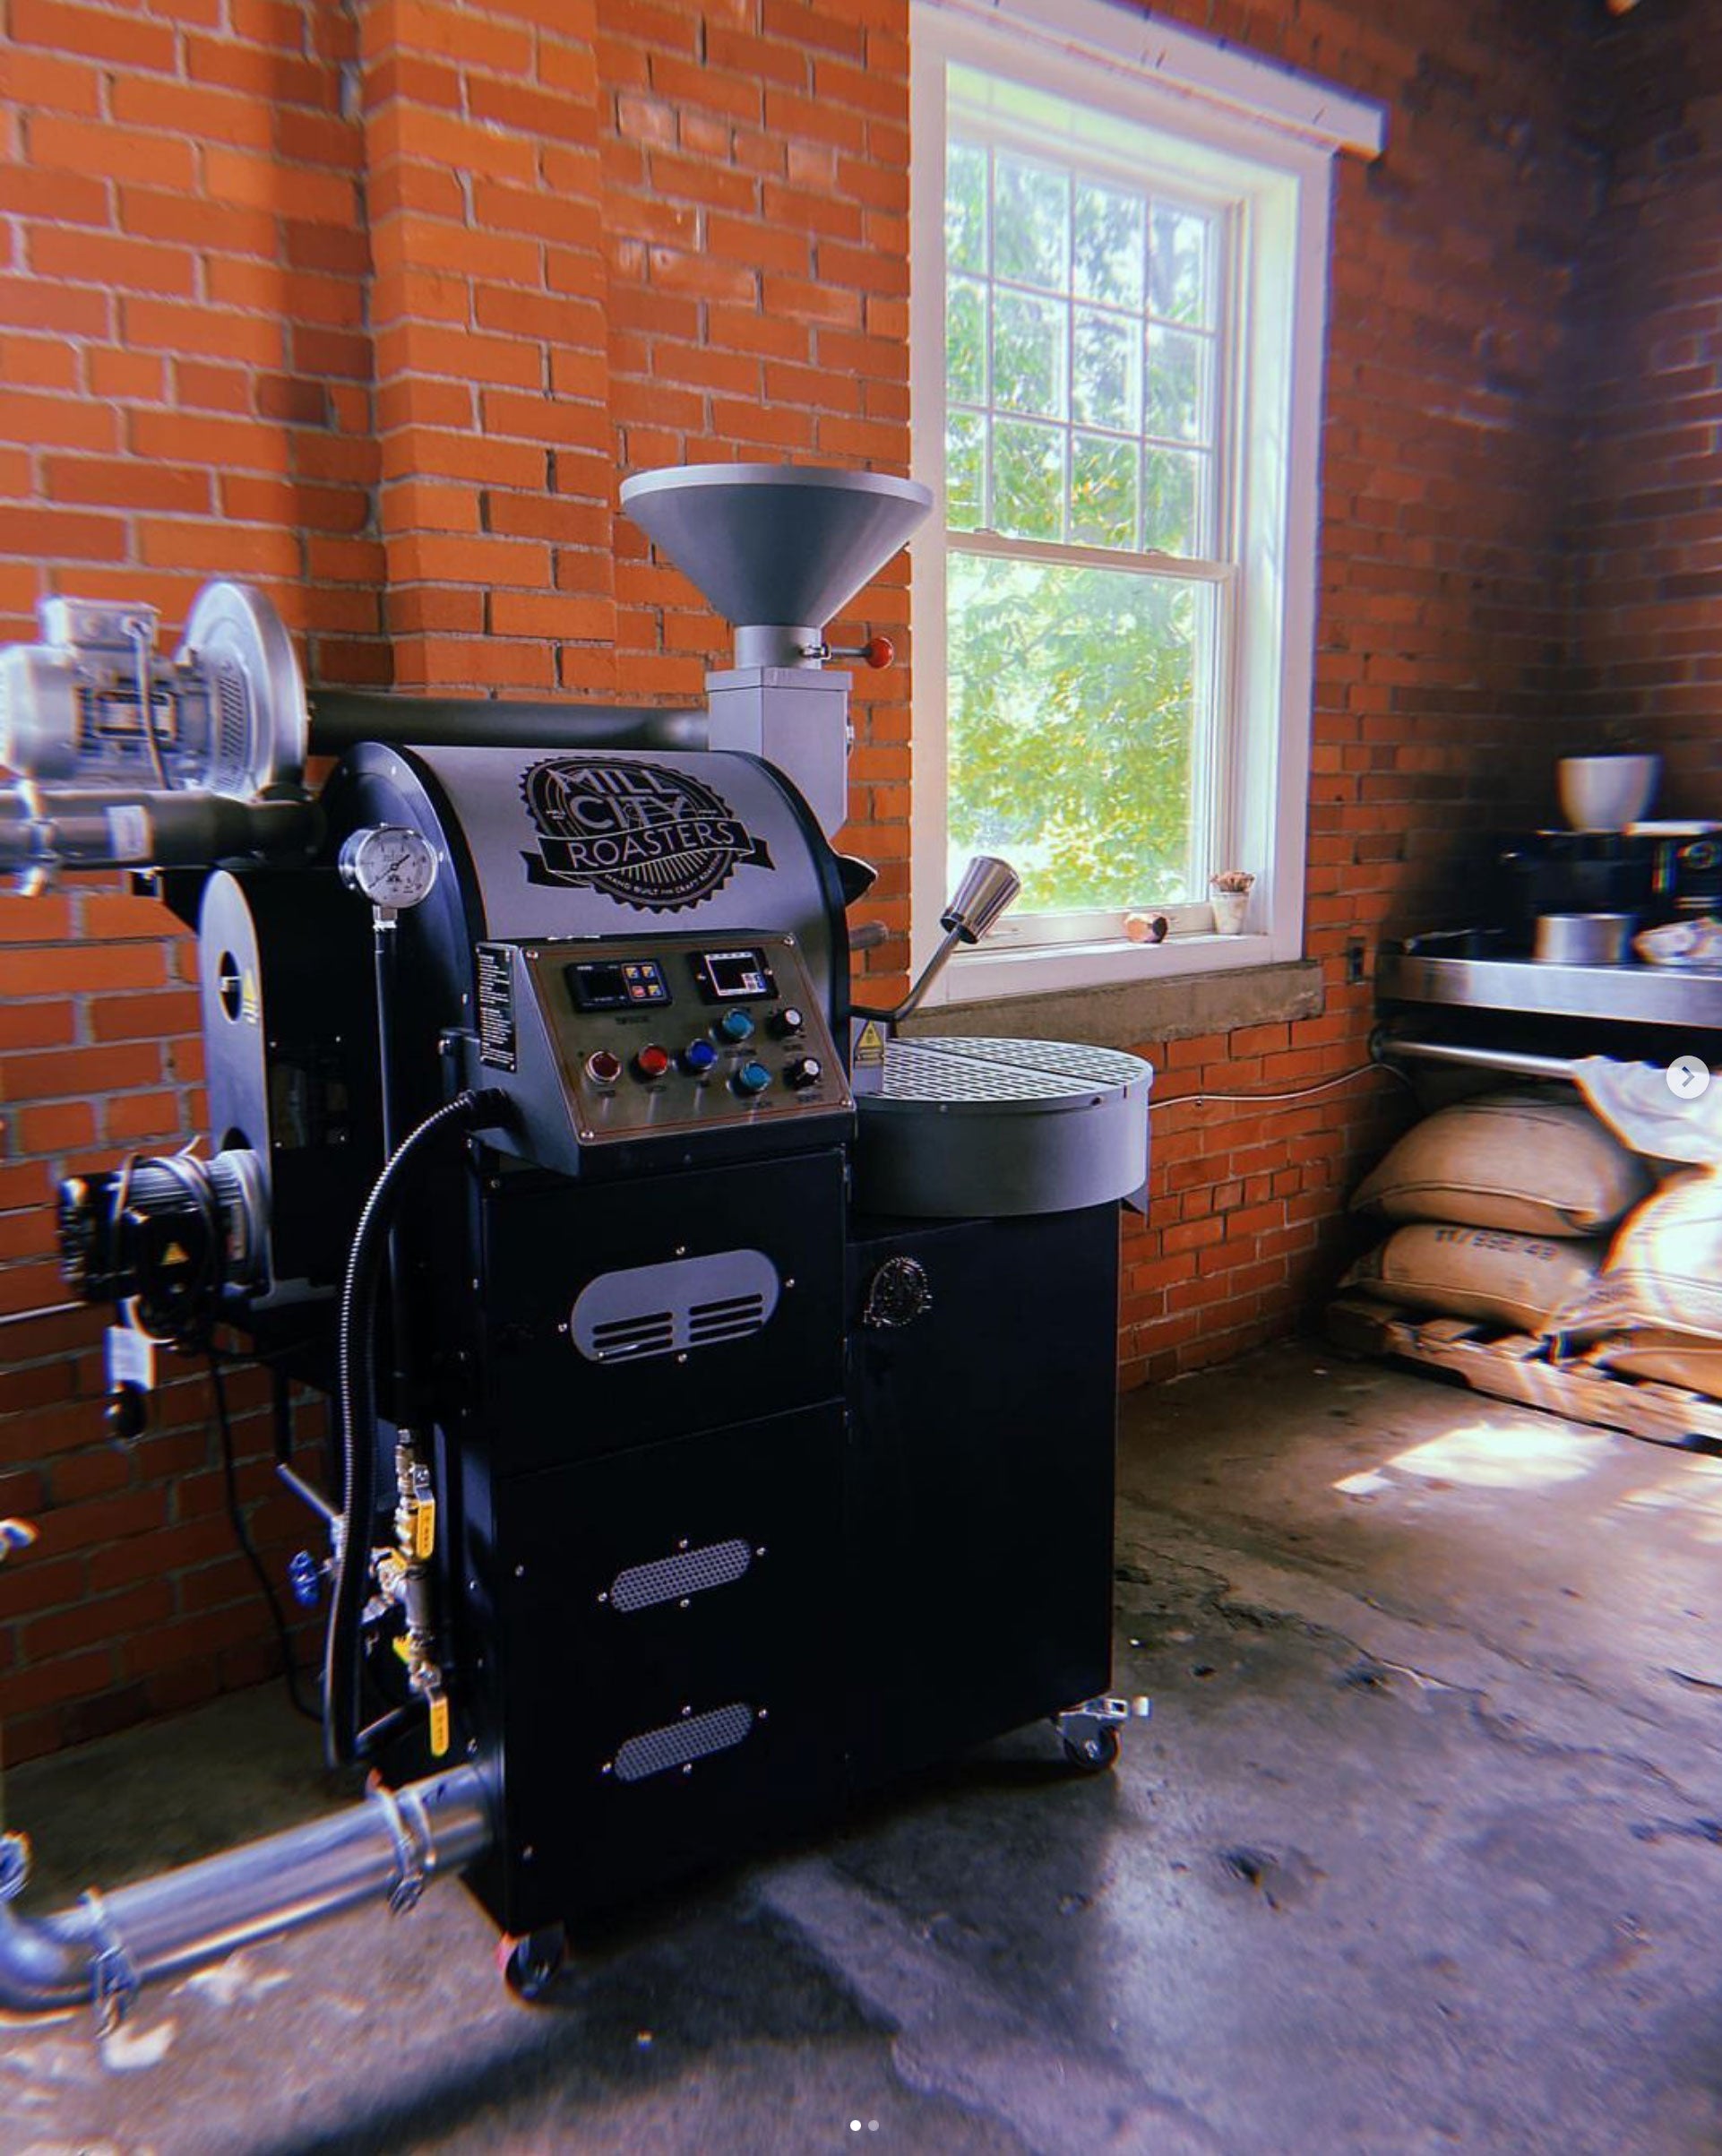 Coffee Percolators for sale in Des Moines, Iowa